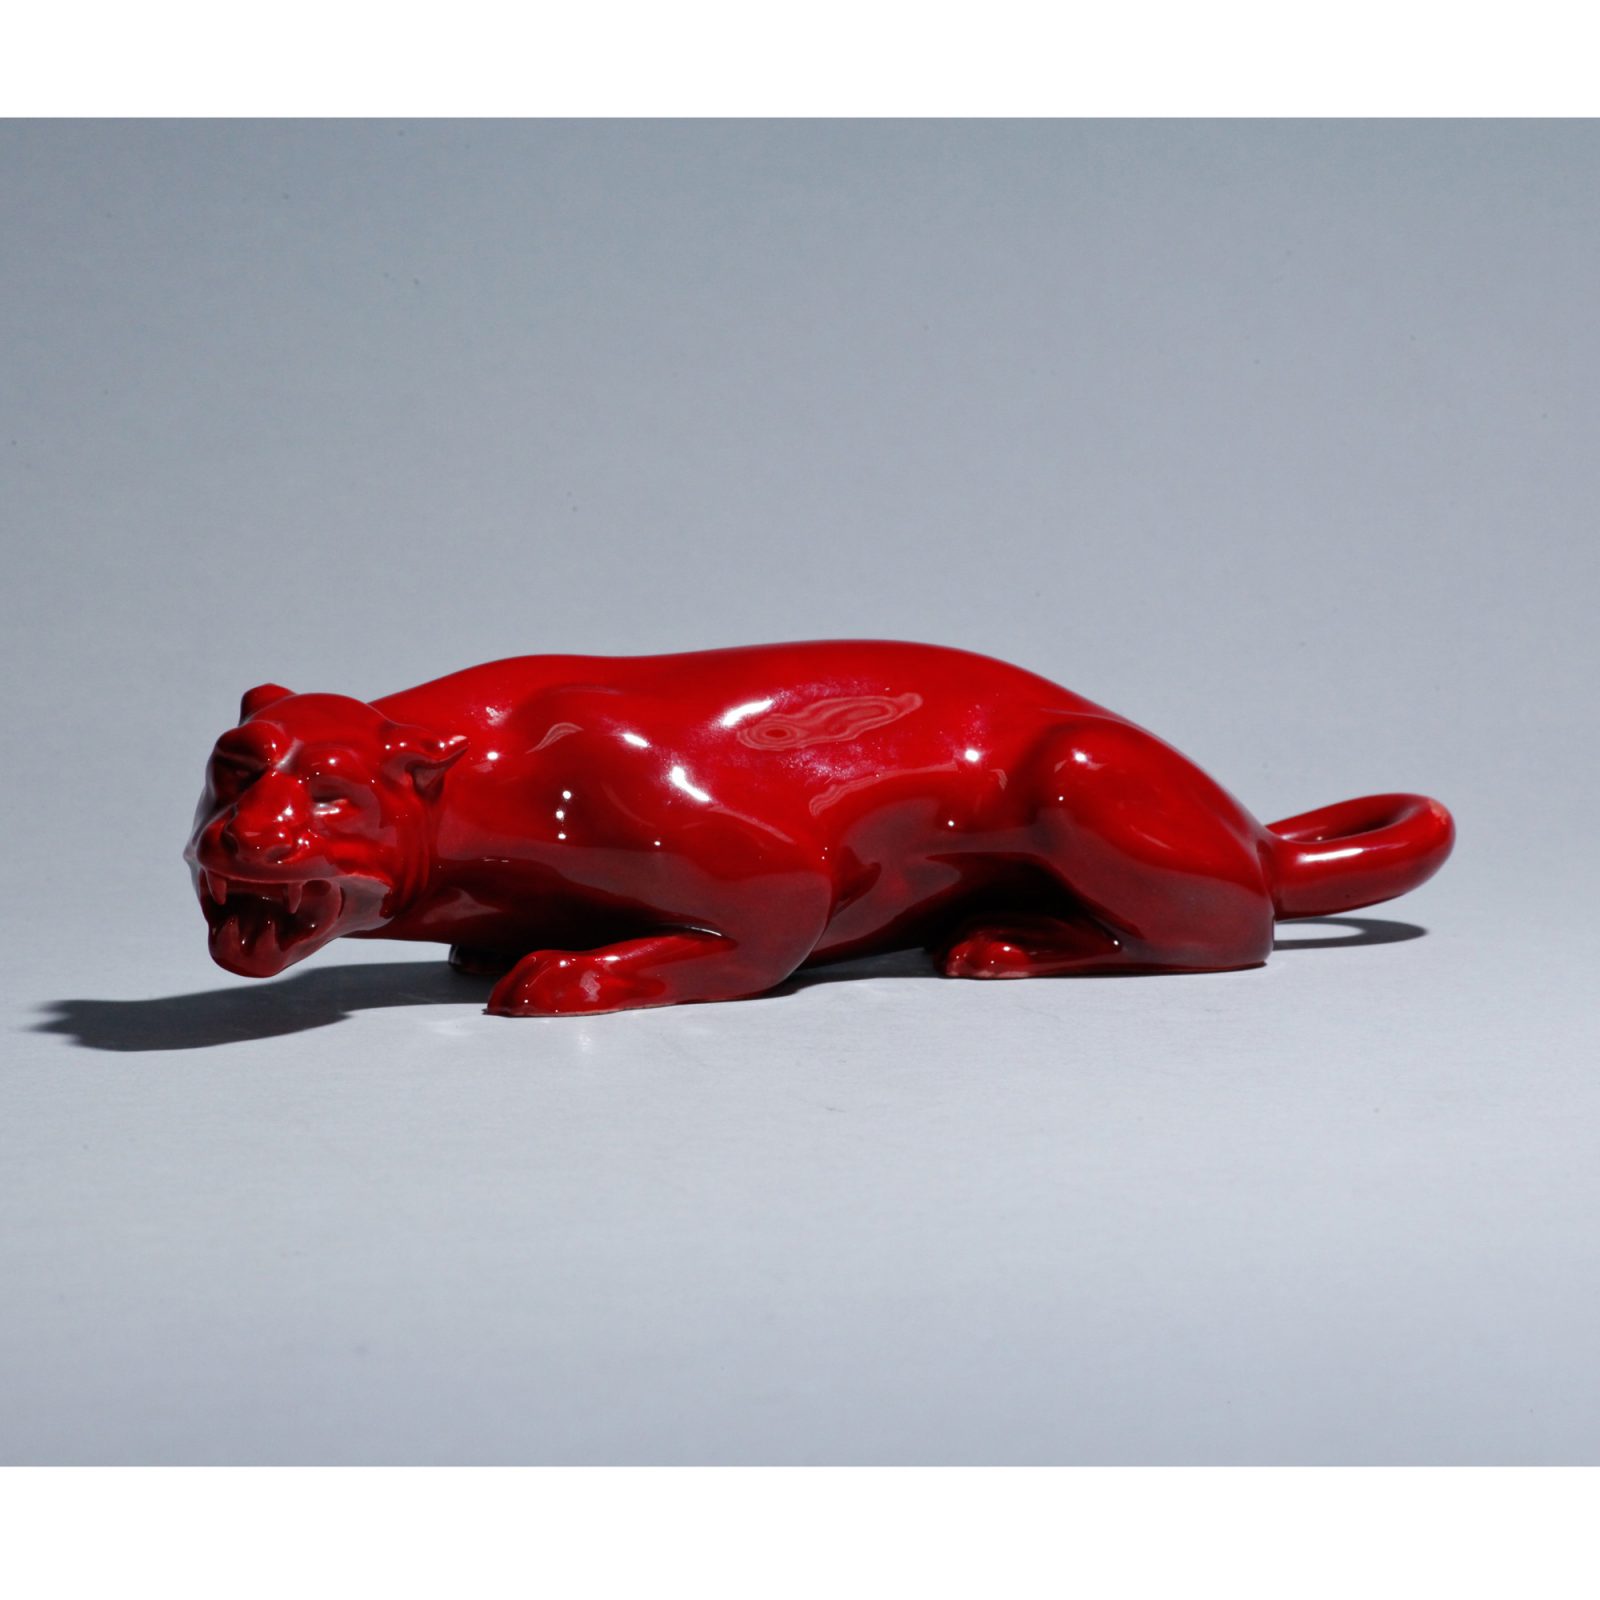 Flambe Panther - Royal Doulton Animal